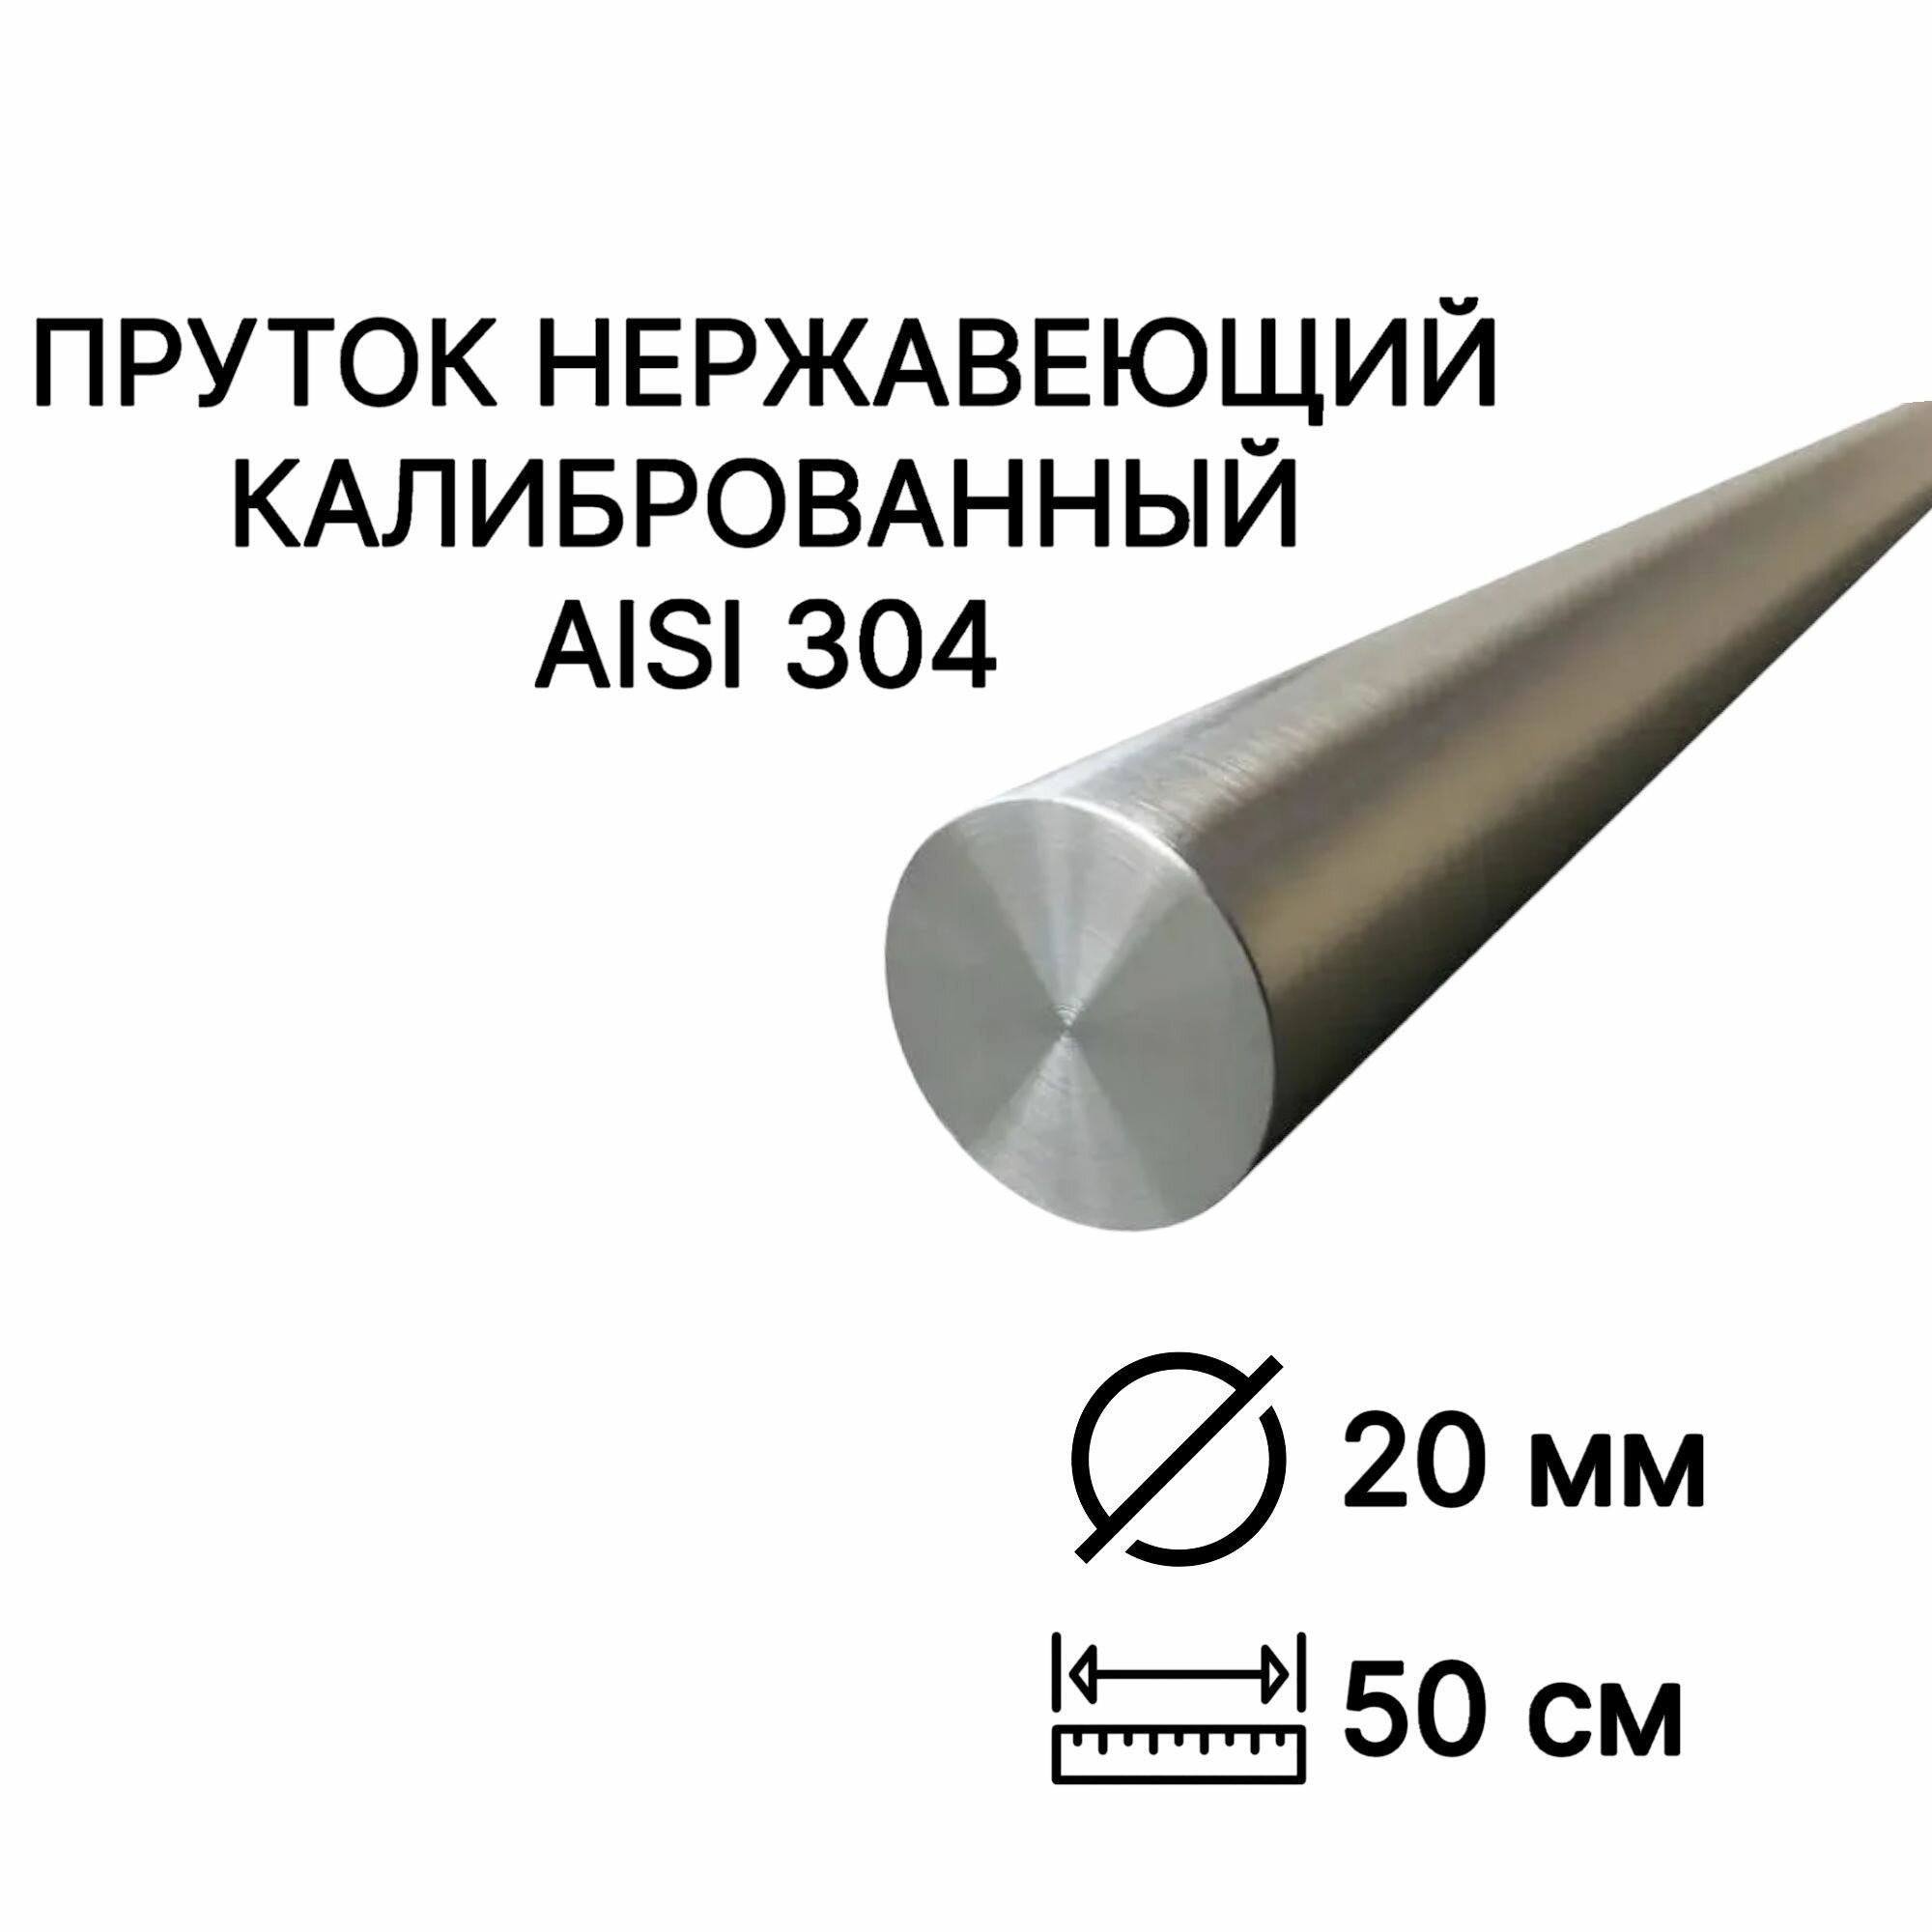 Пруток / круг из нержавейки 20мм. Нержавеющая сталь AISI304, пруток - 0,5 метр